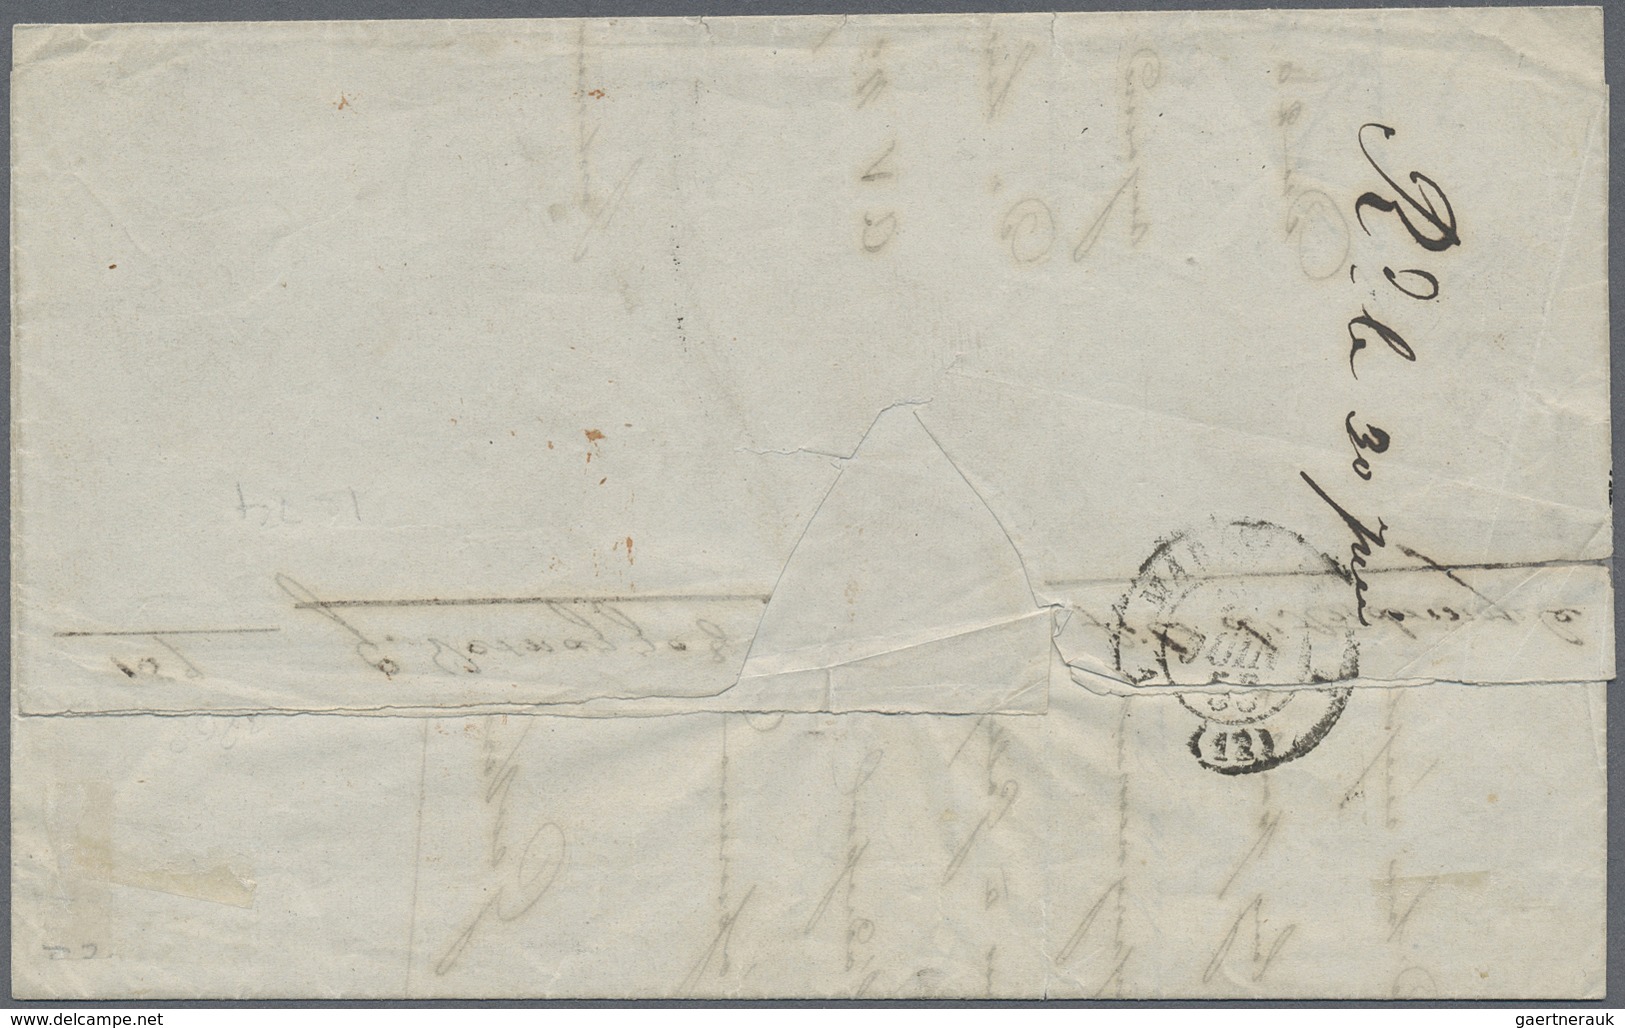 Br Türkei - Vorphilatelie: 1853: "GALLIPOLI" Clear Strike Of The Rare Postmark Of The French Post Offic - ...-1858 Préphilatélie